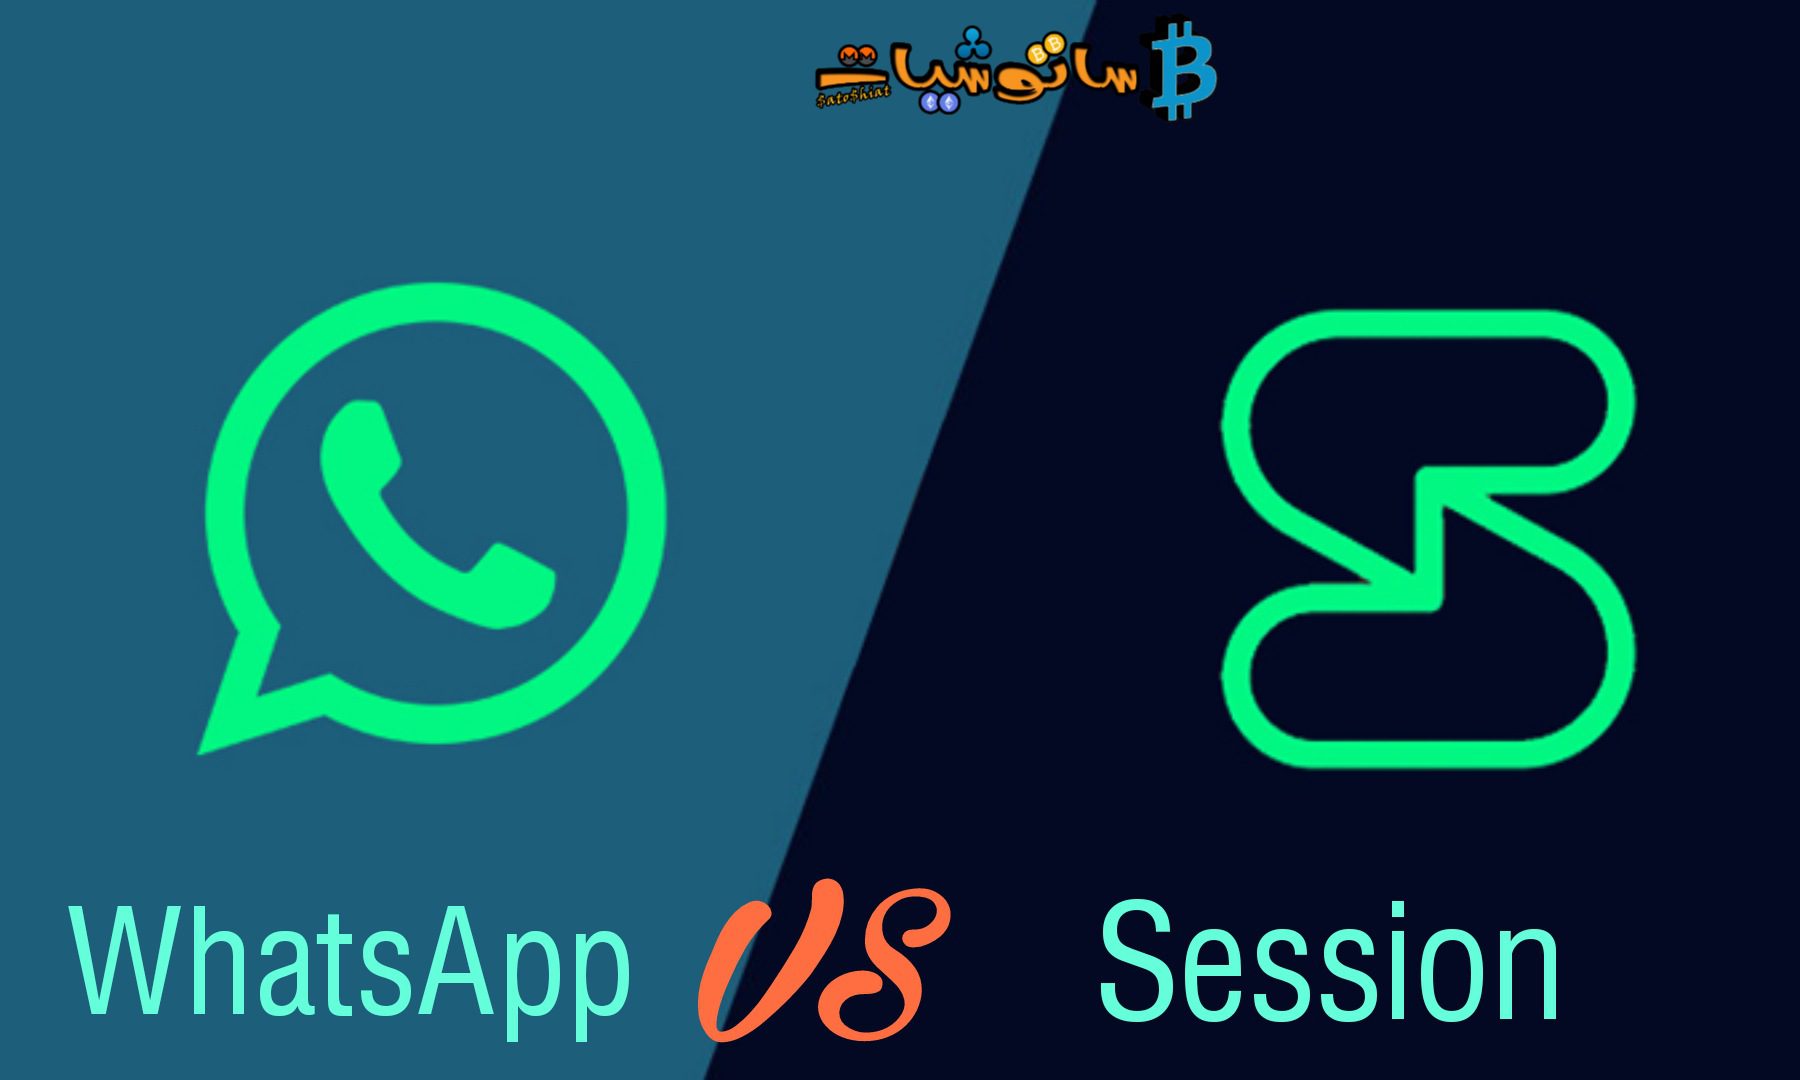 تطبيق Session تطبيق المحادثة الجديد المبني على بلوكتشين -القاتل الجديد لتطبيق WhatsApp